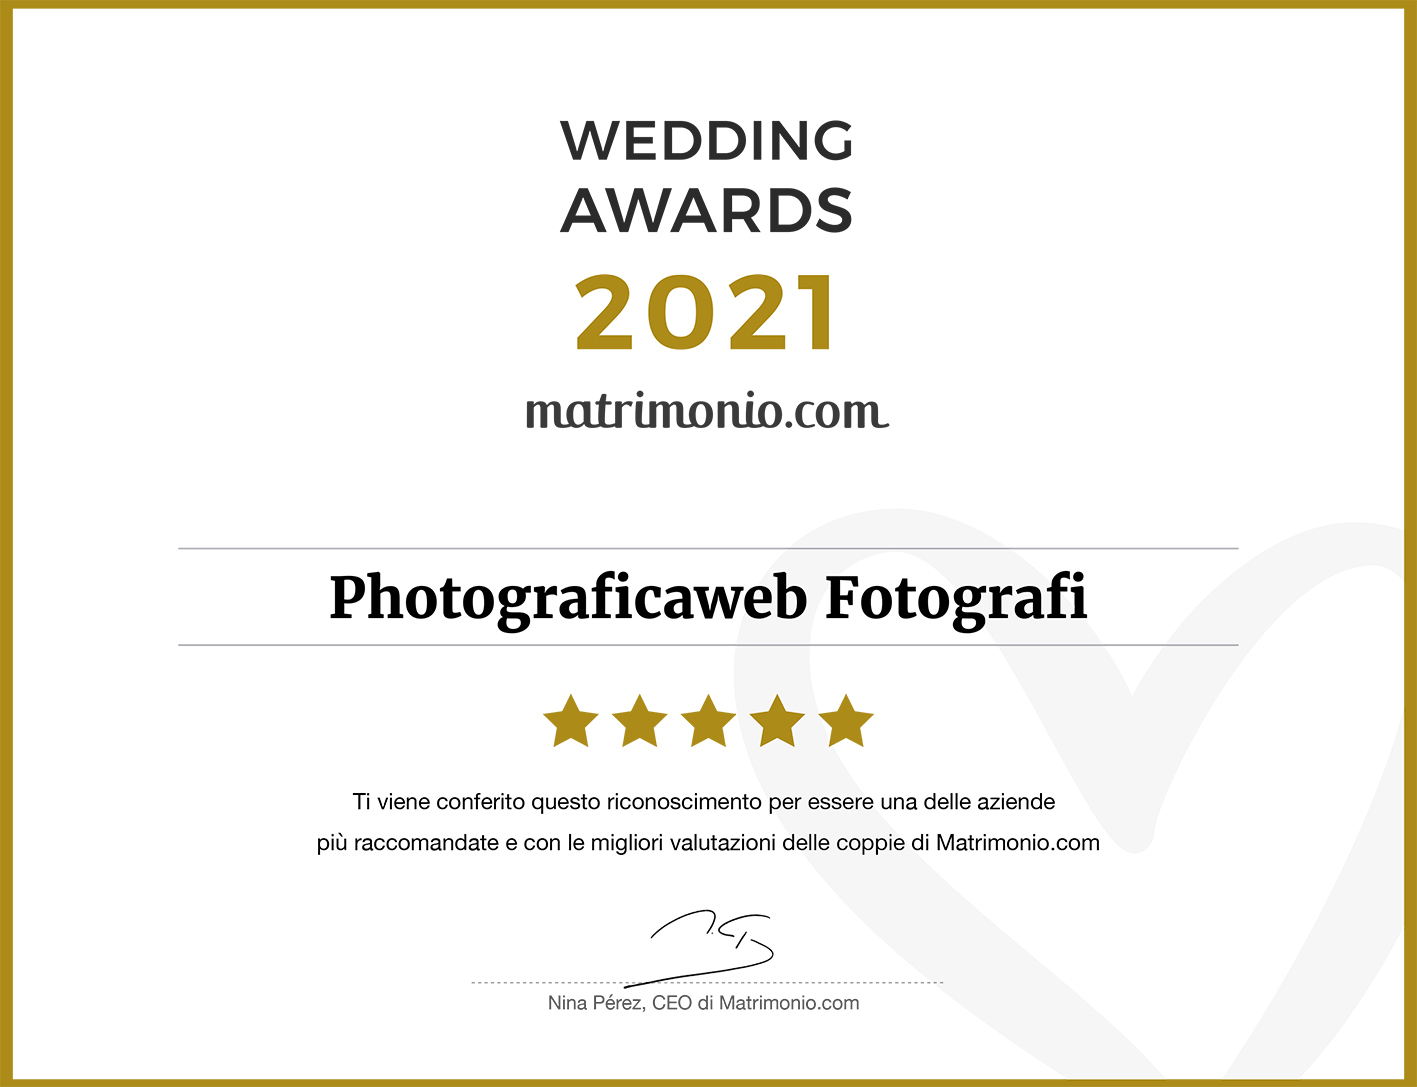 Wedding Awards Photograficaweb 2021